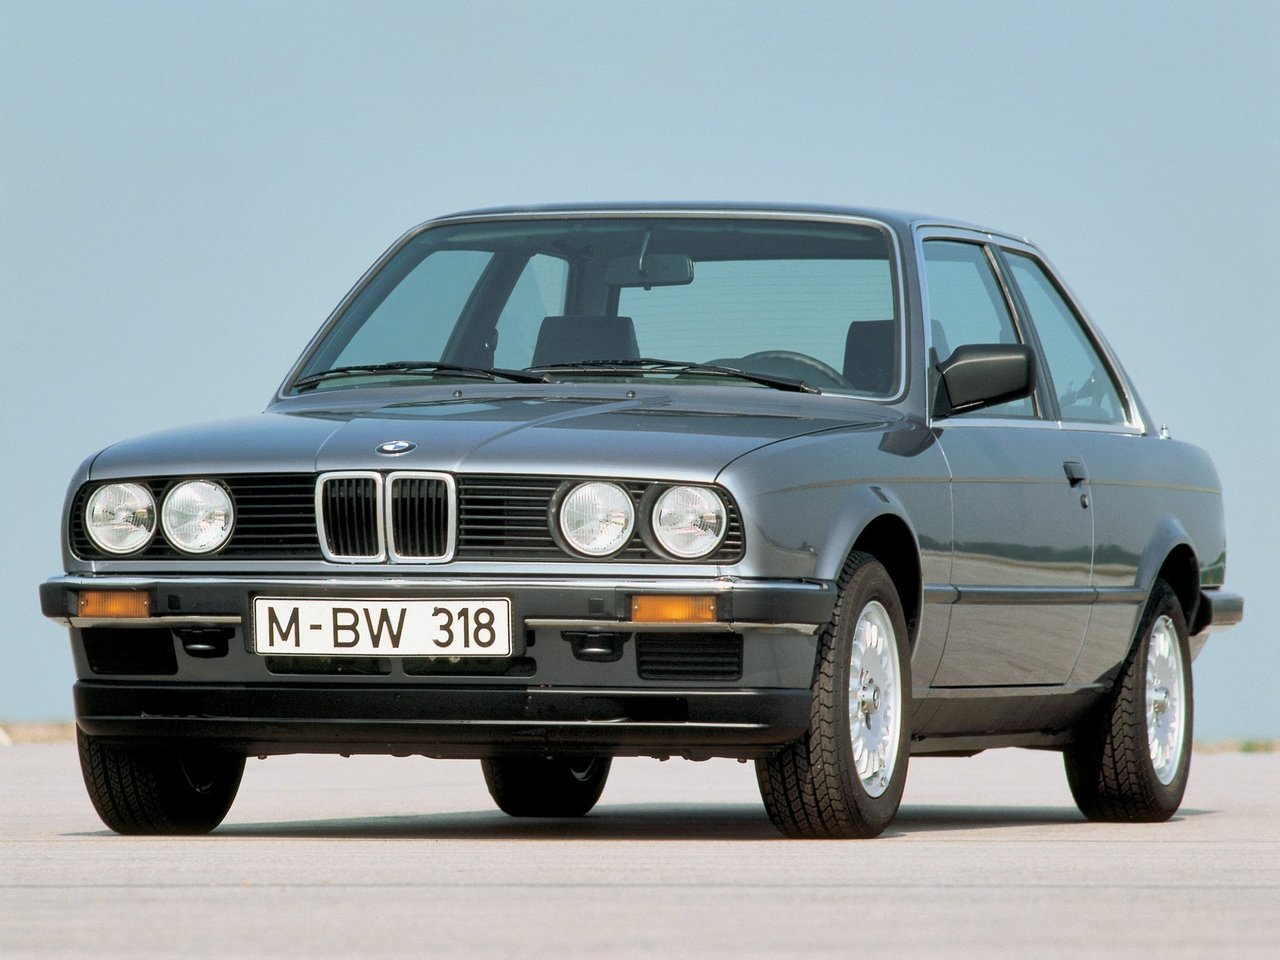 Расход газа шести комплектаций купе BMW 3 серия. Разница стоимости заправки газом и бензином. Автономный пробег до и после установки ГБО.